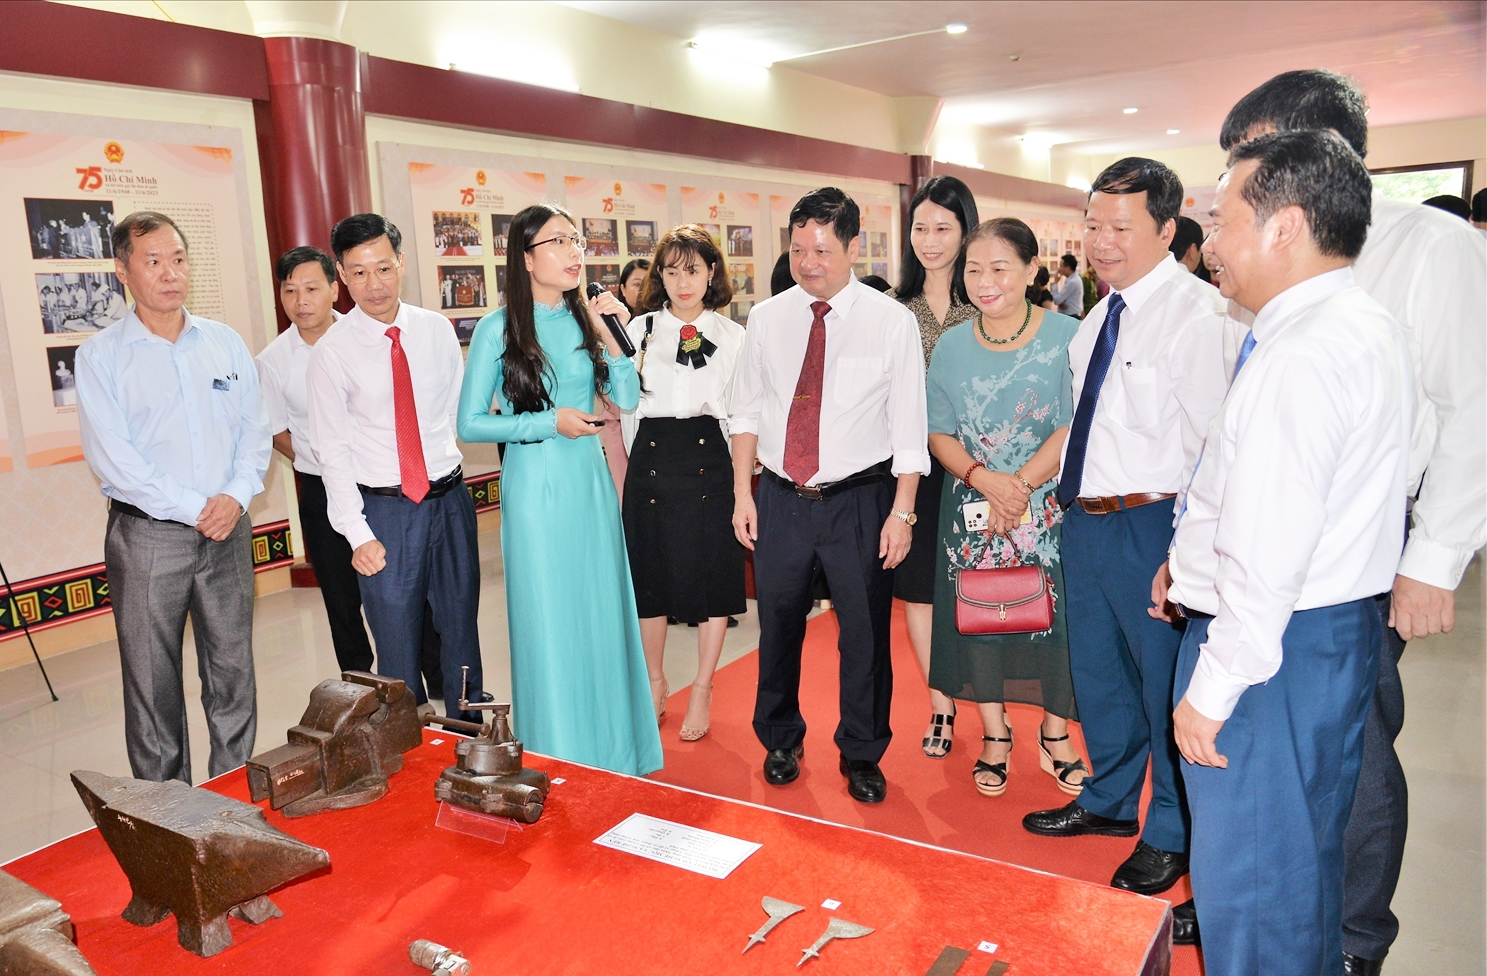 Thuyết minh viên Bảo tàng tỉnh Lạng Sơn giới thiệu ý nghĩa hiện vật cho các đại biểu tại gian trưng bày